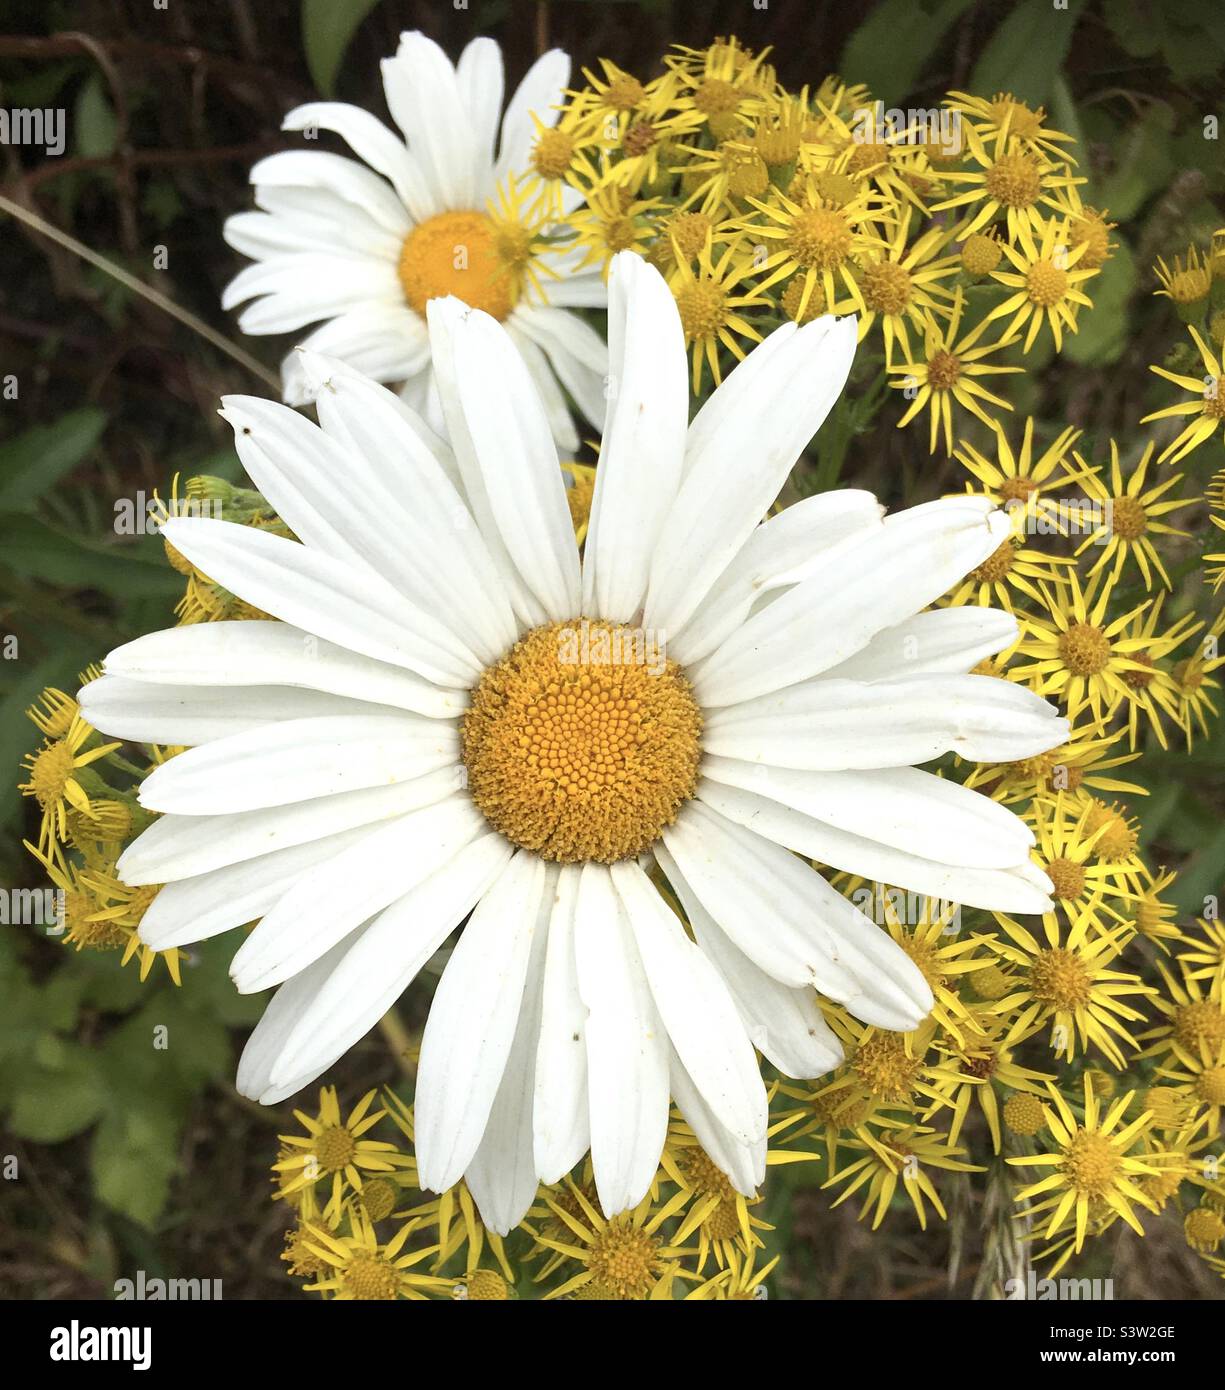 Gänseblümchen, gelb, weiß, Natur, Blumen Freude Stockfoto